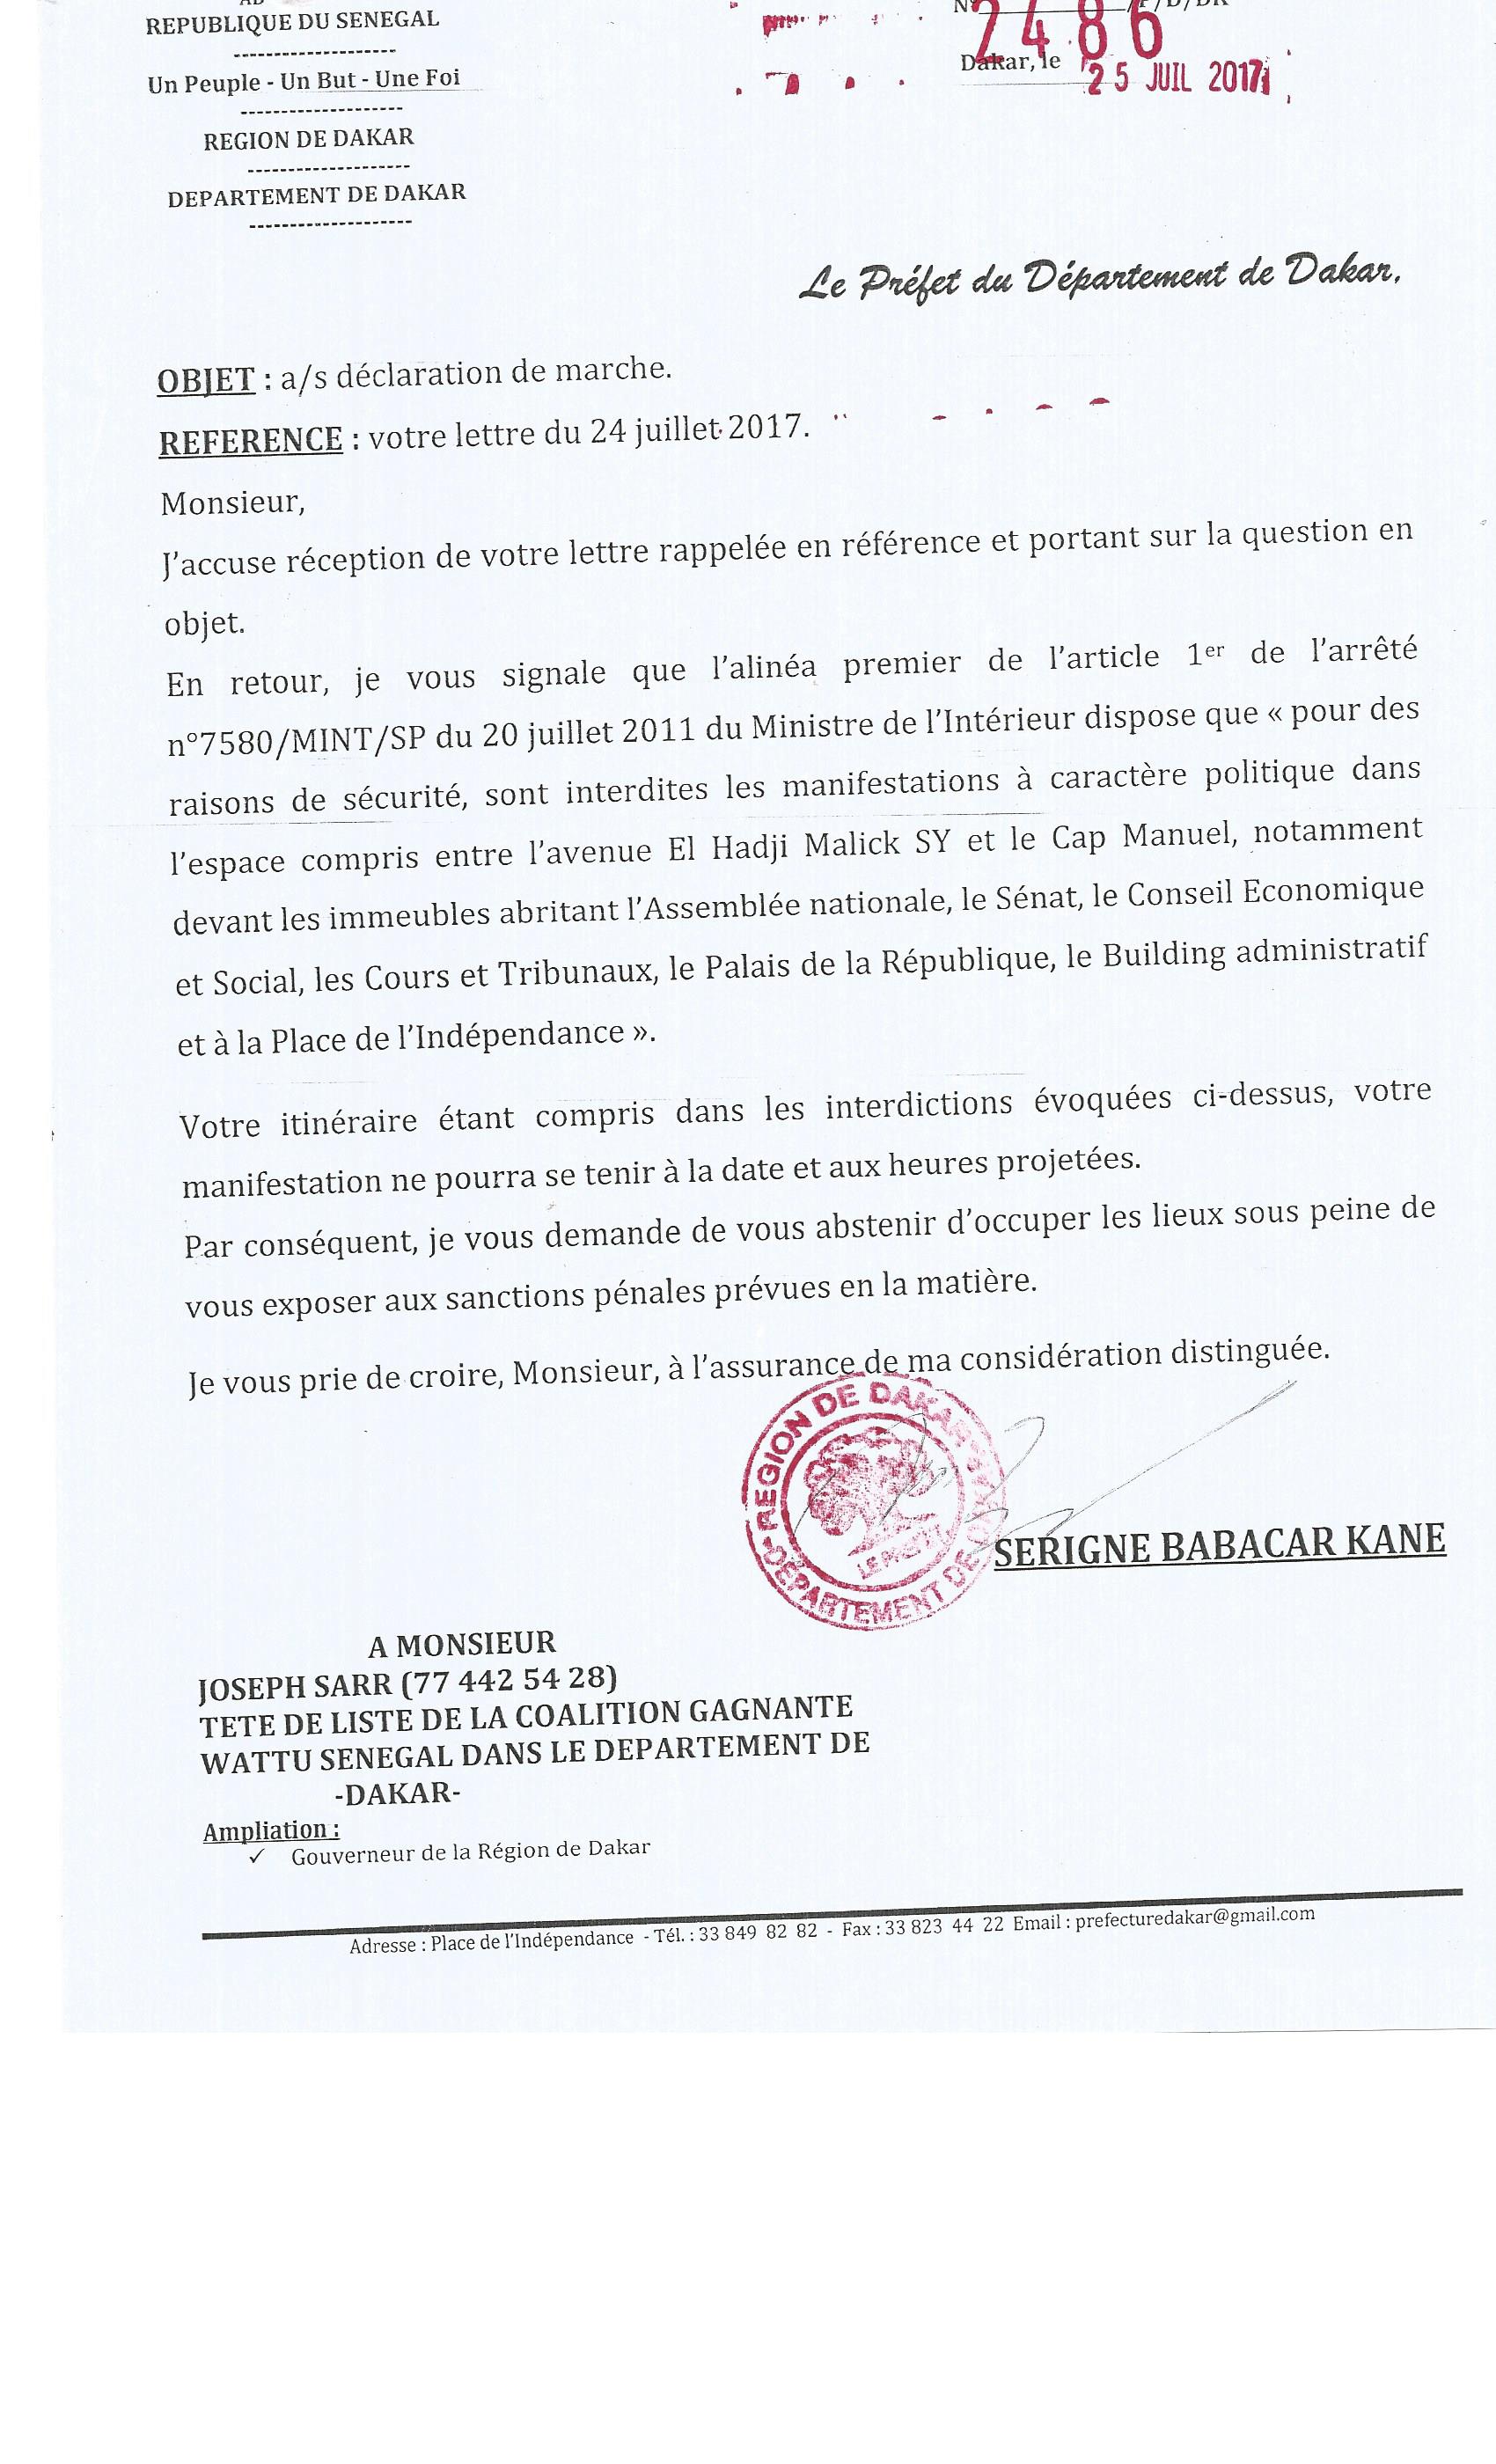 Le Préfet de Dakar interdit la marche de Me Abdoulaye Wade (document)